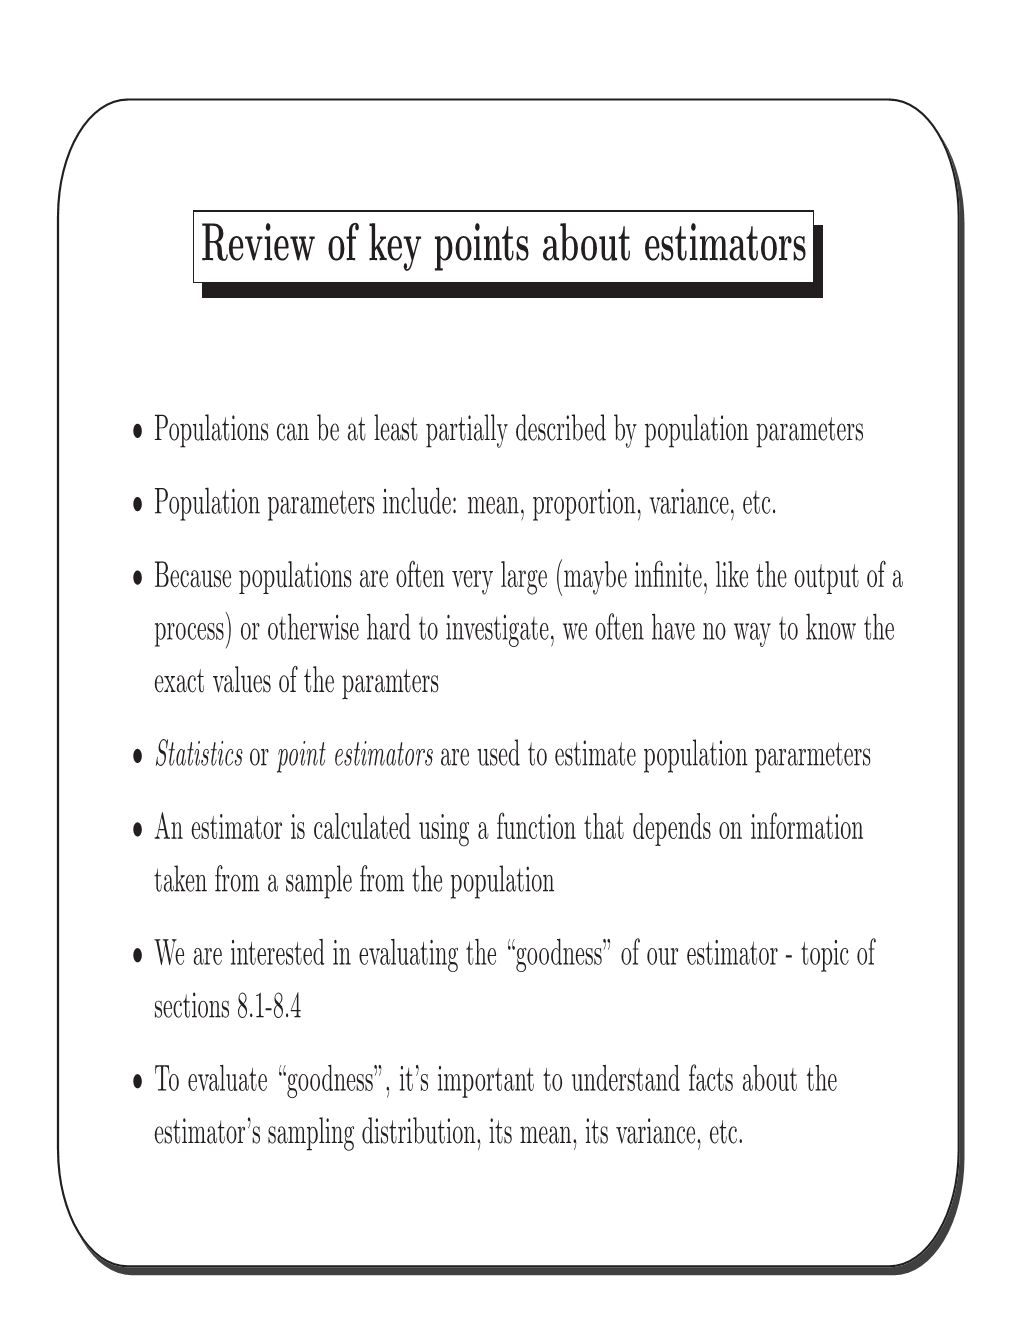 Review of Key Points About Estimators